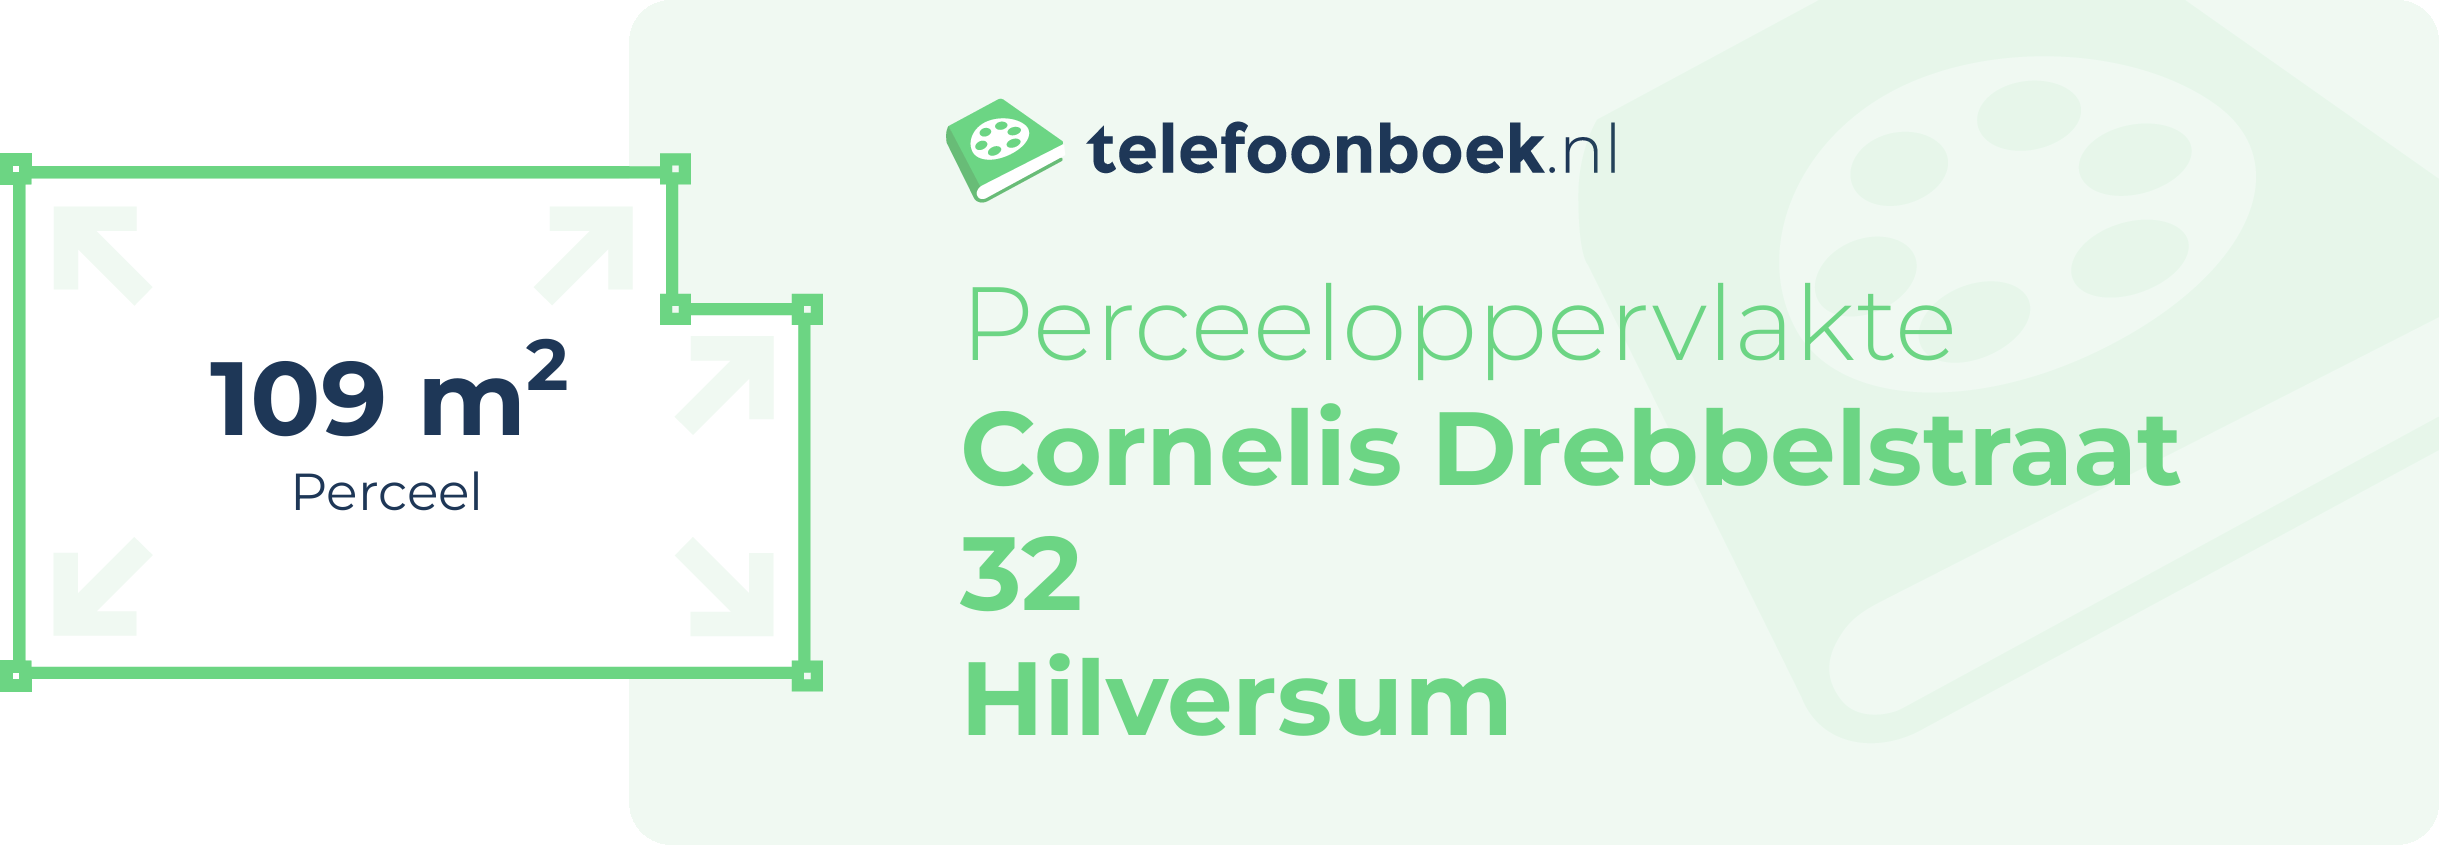 Perceeloppervlakte Cornelis Drebbelstraat 32 Hilversum